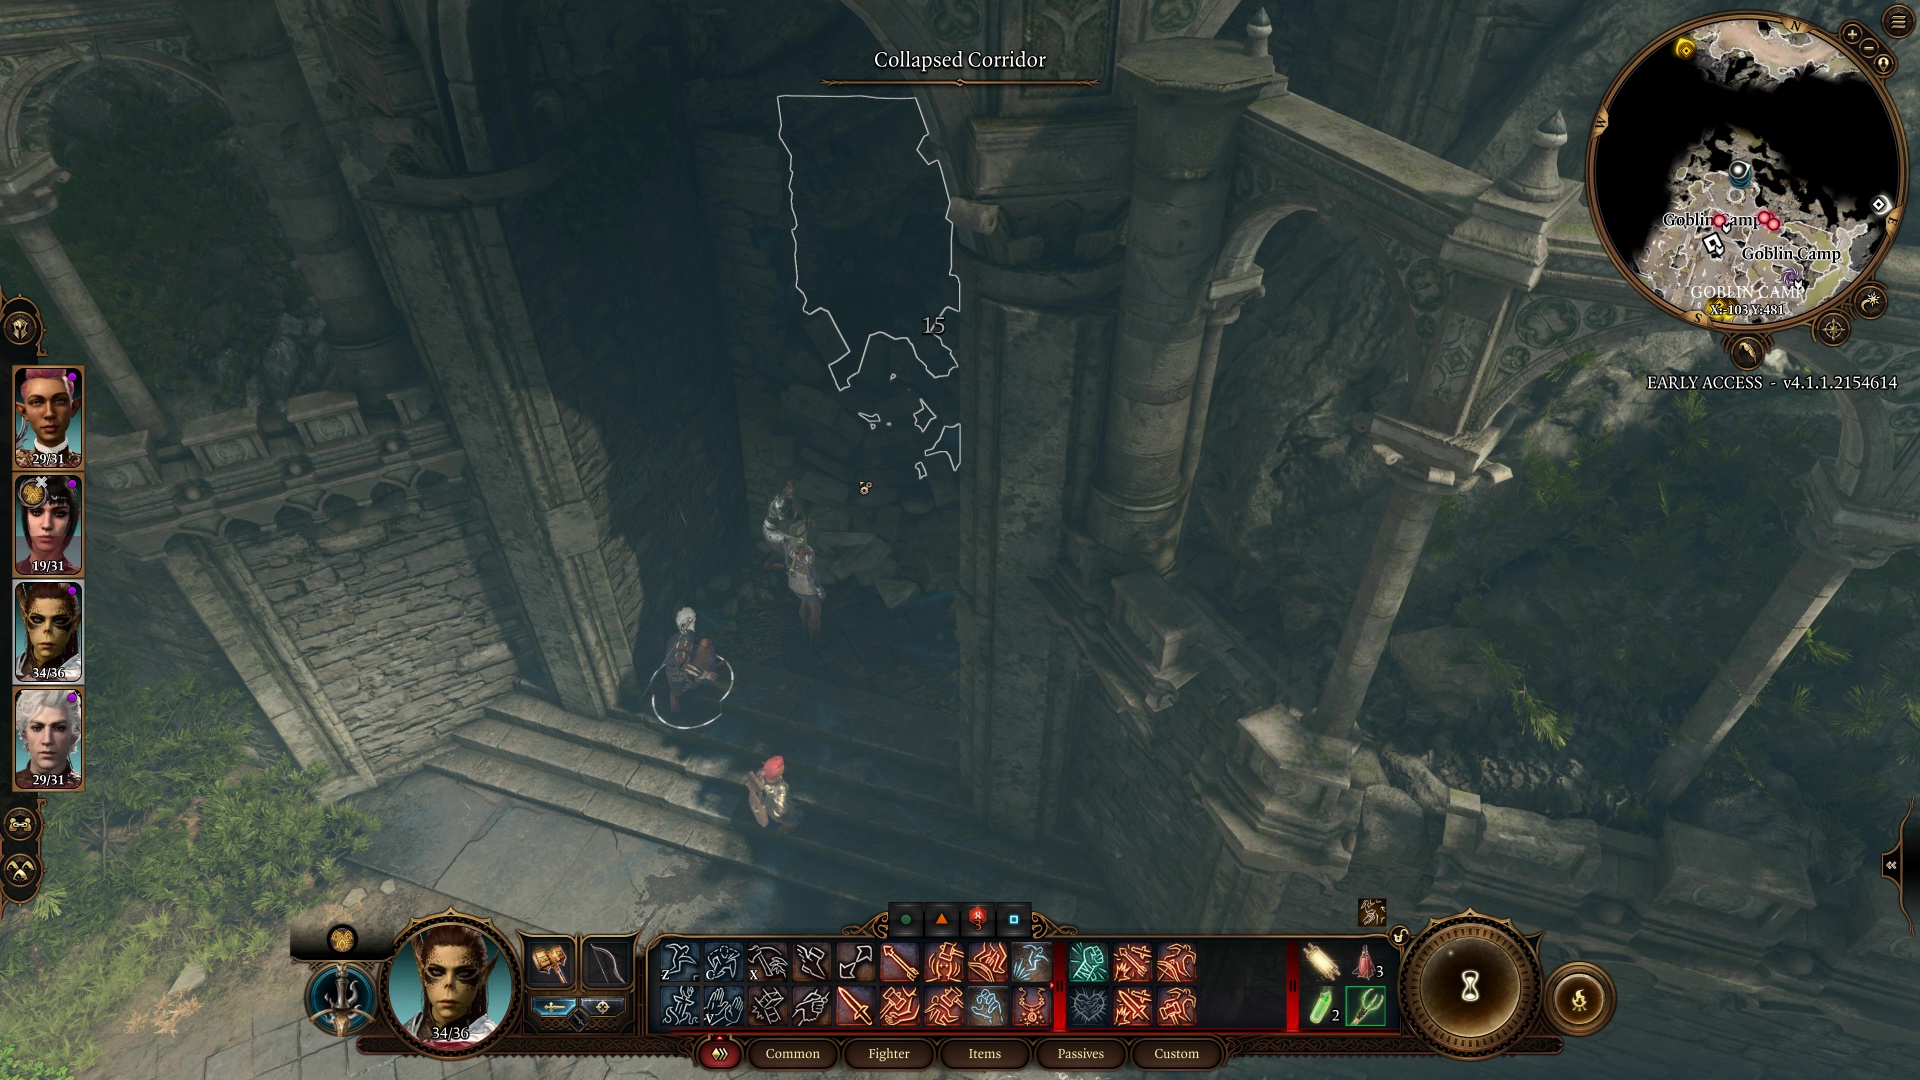 Sisäänkäynti Shattered Sanctumiin peikkoleirissä Baldur's Gate 3:ssa.